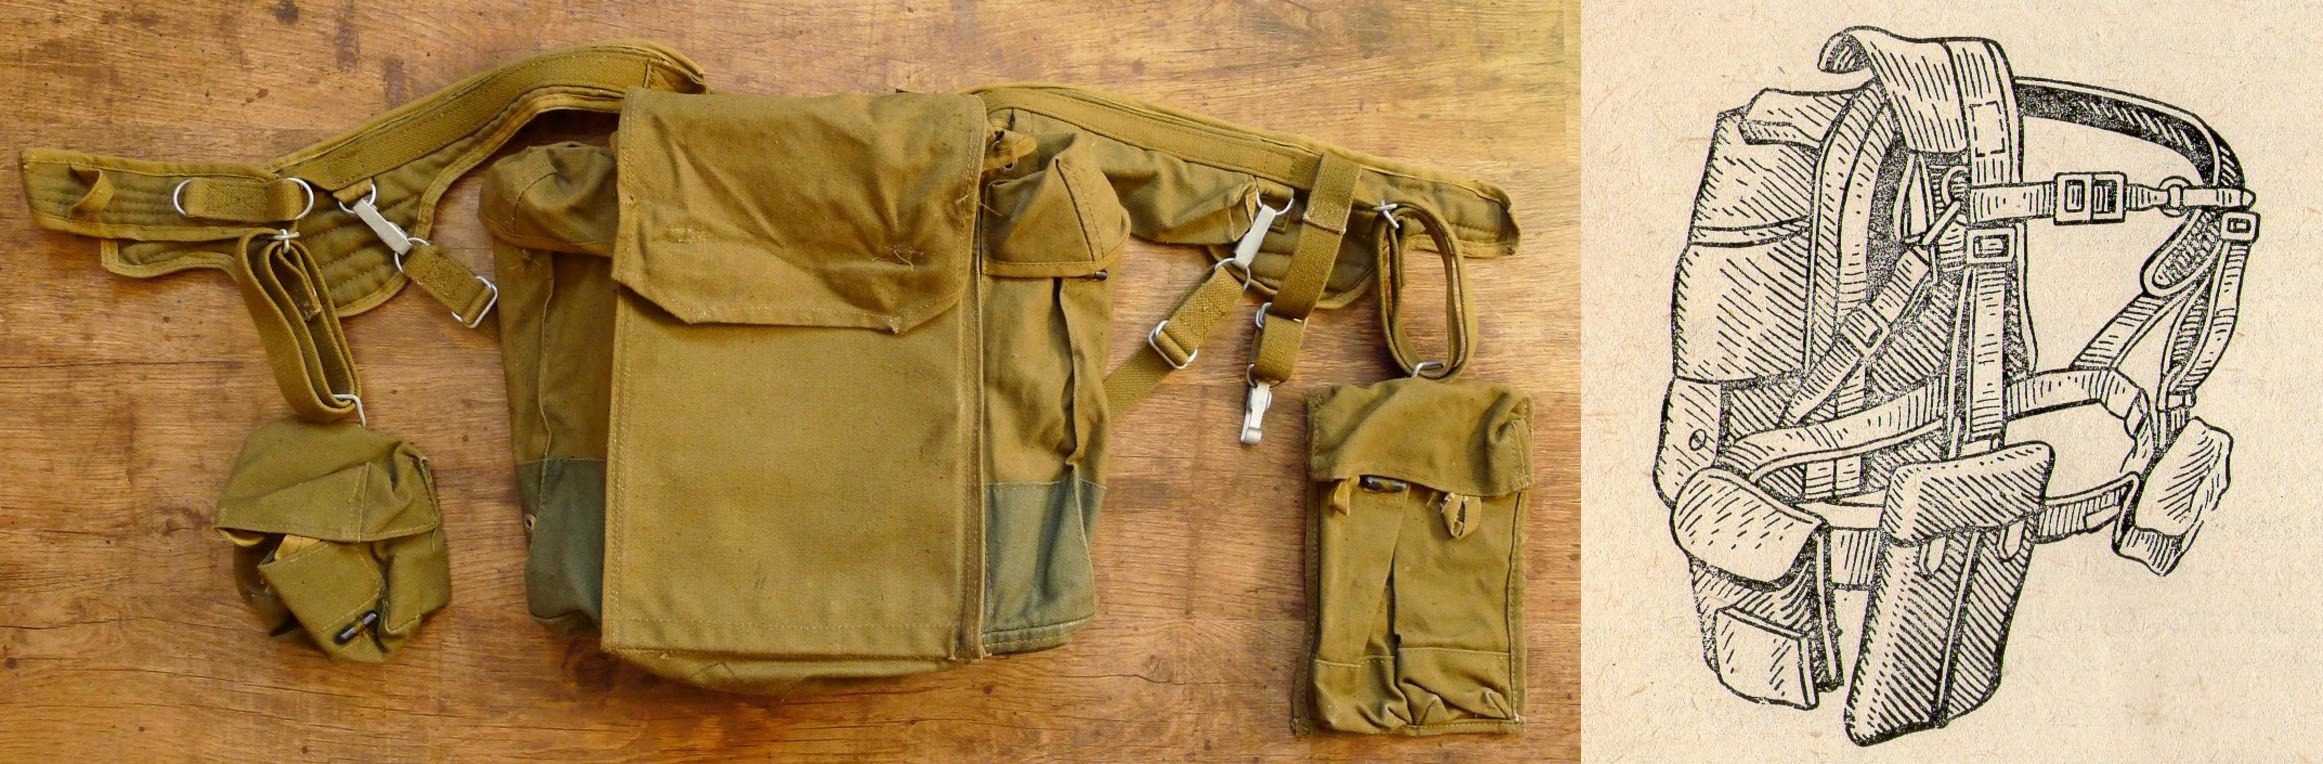 Рюкзак десантника зразка 1954 року і розвантажувальна система до нього (РД-54), якими користувалися аж до самого розпаду СРСР